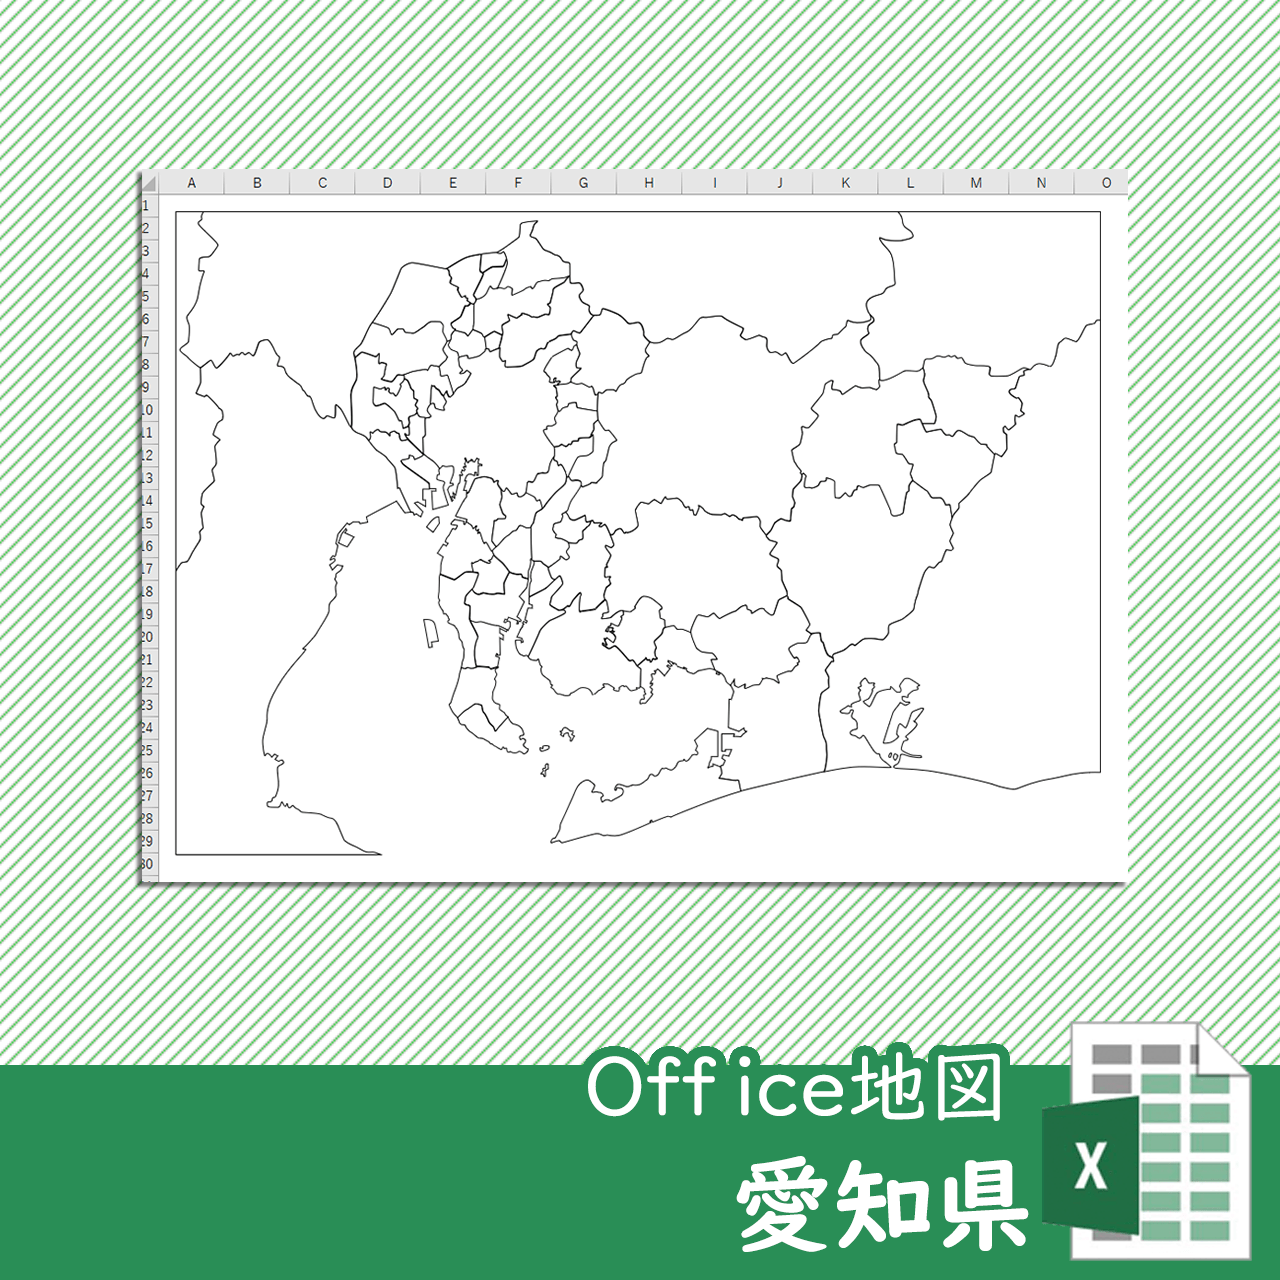 愛知県のoffice地図